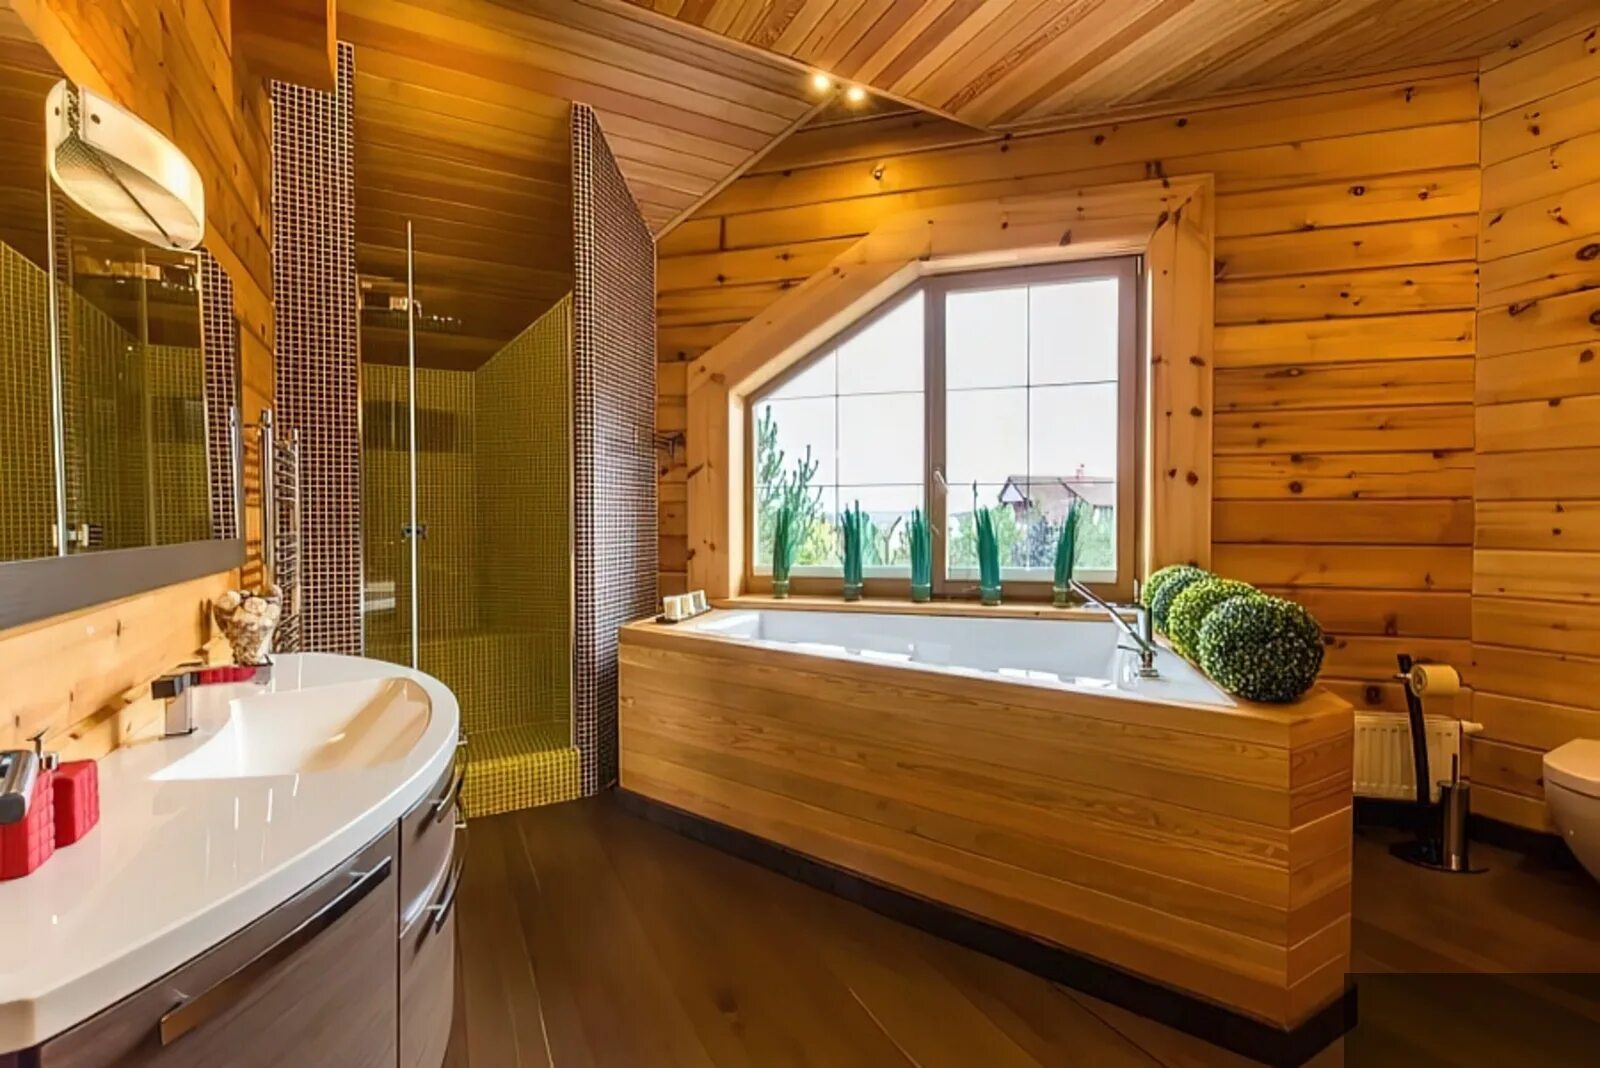 Ванная комната в деревянном доме. Ваееая в деревянном доме. Ванная отделанная деревом. Санузел в деревянном доме.